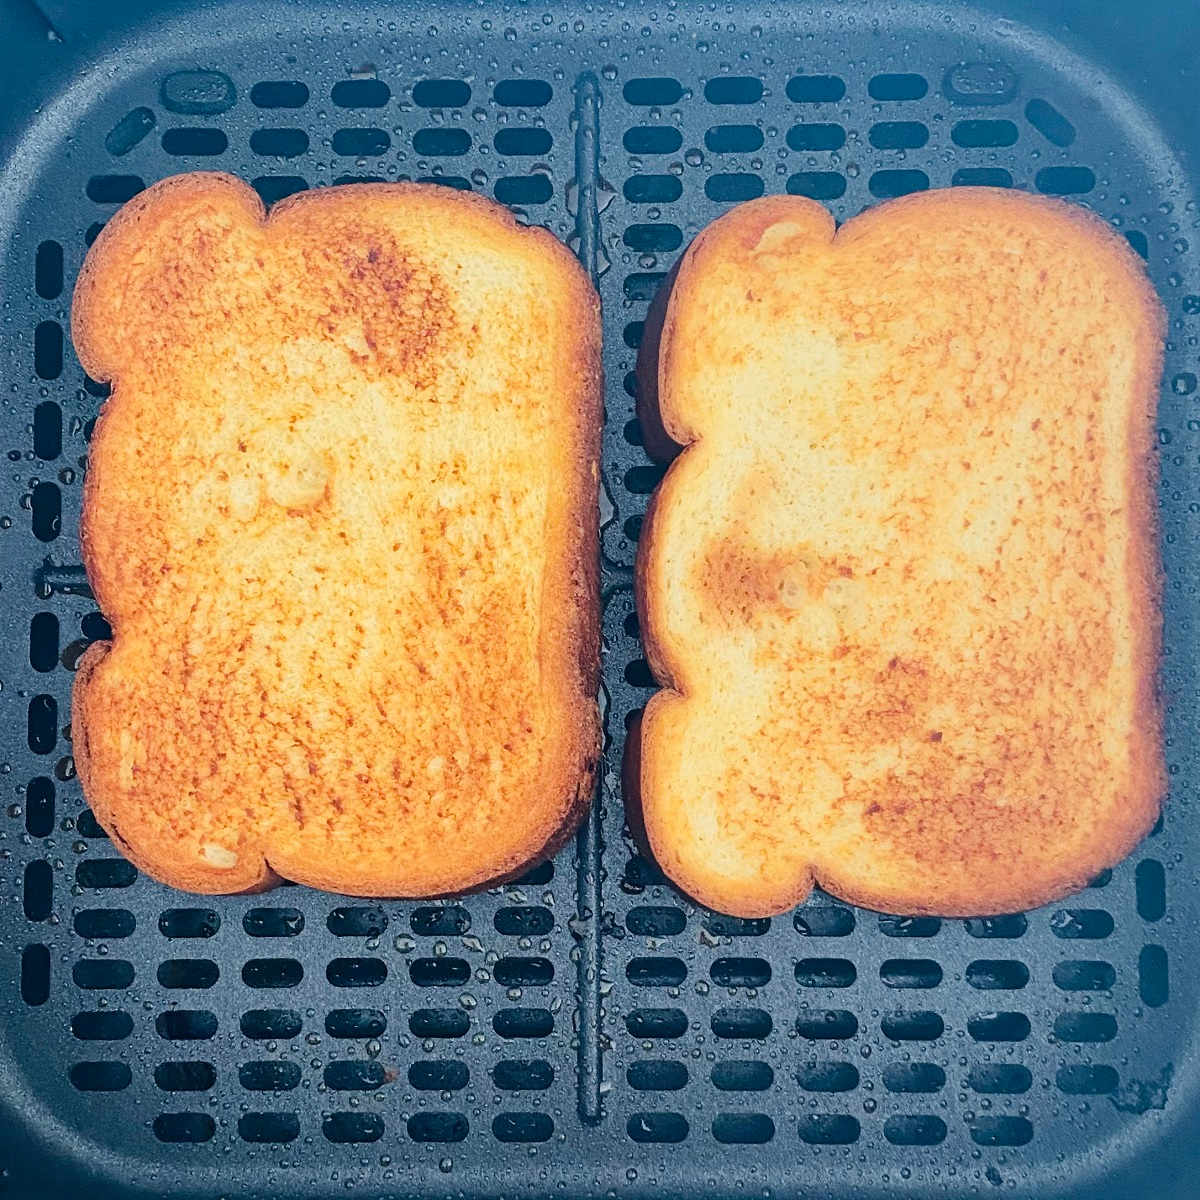 toast bread in air fryer basket